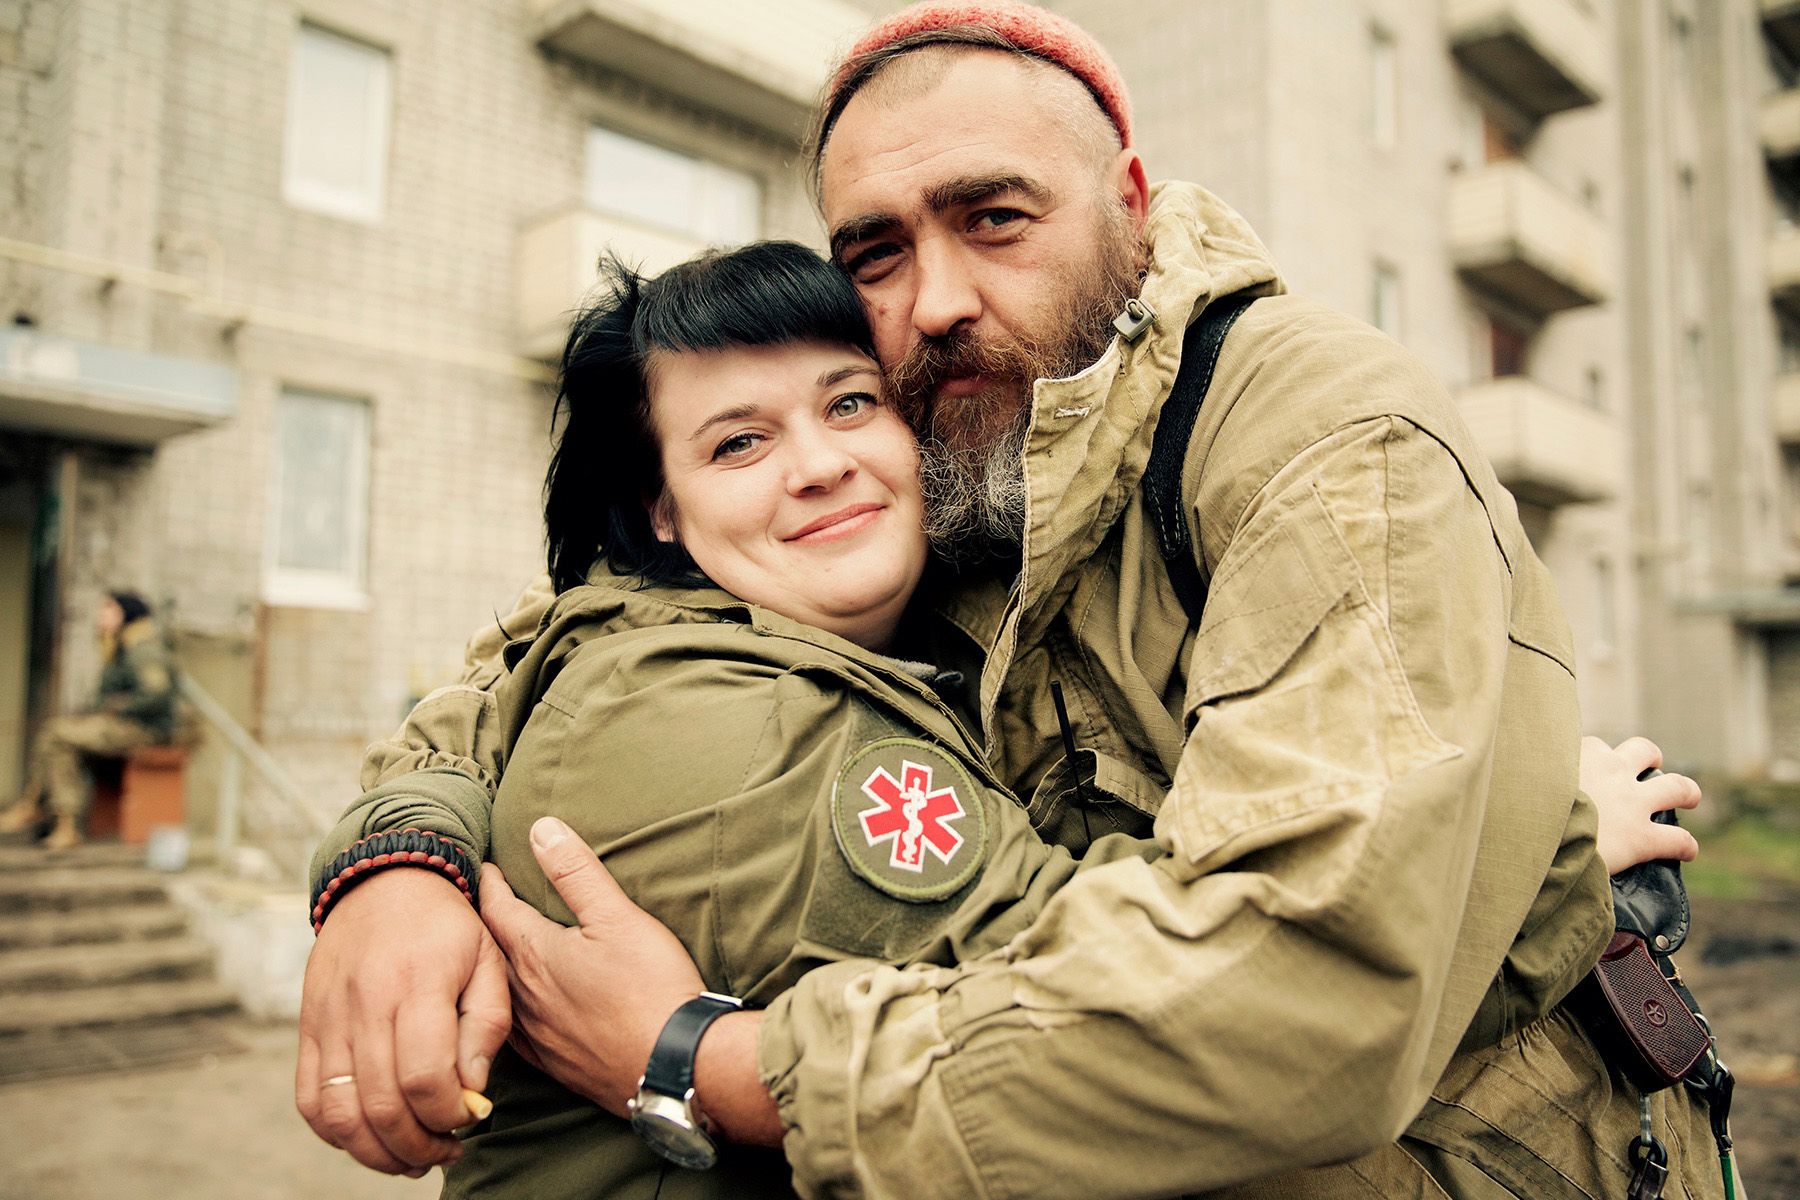 На конкурс украинской военной фотографии представили снимки, глядя на которые наворачиваются слезы на глаза